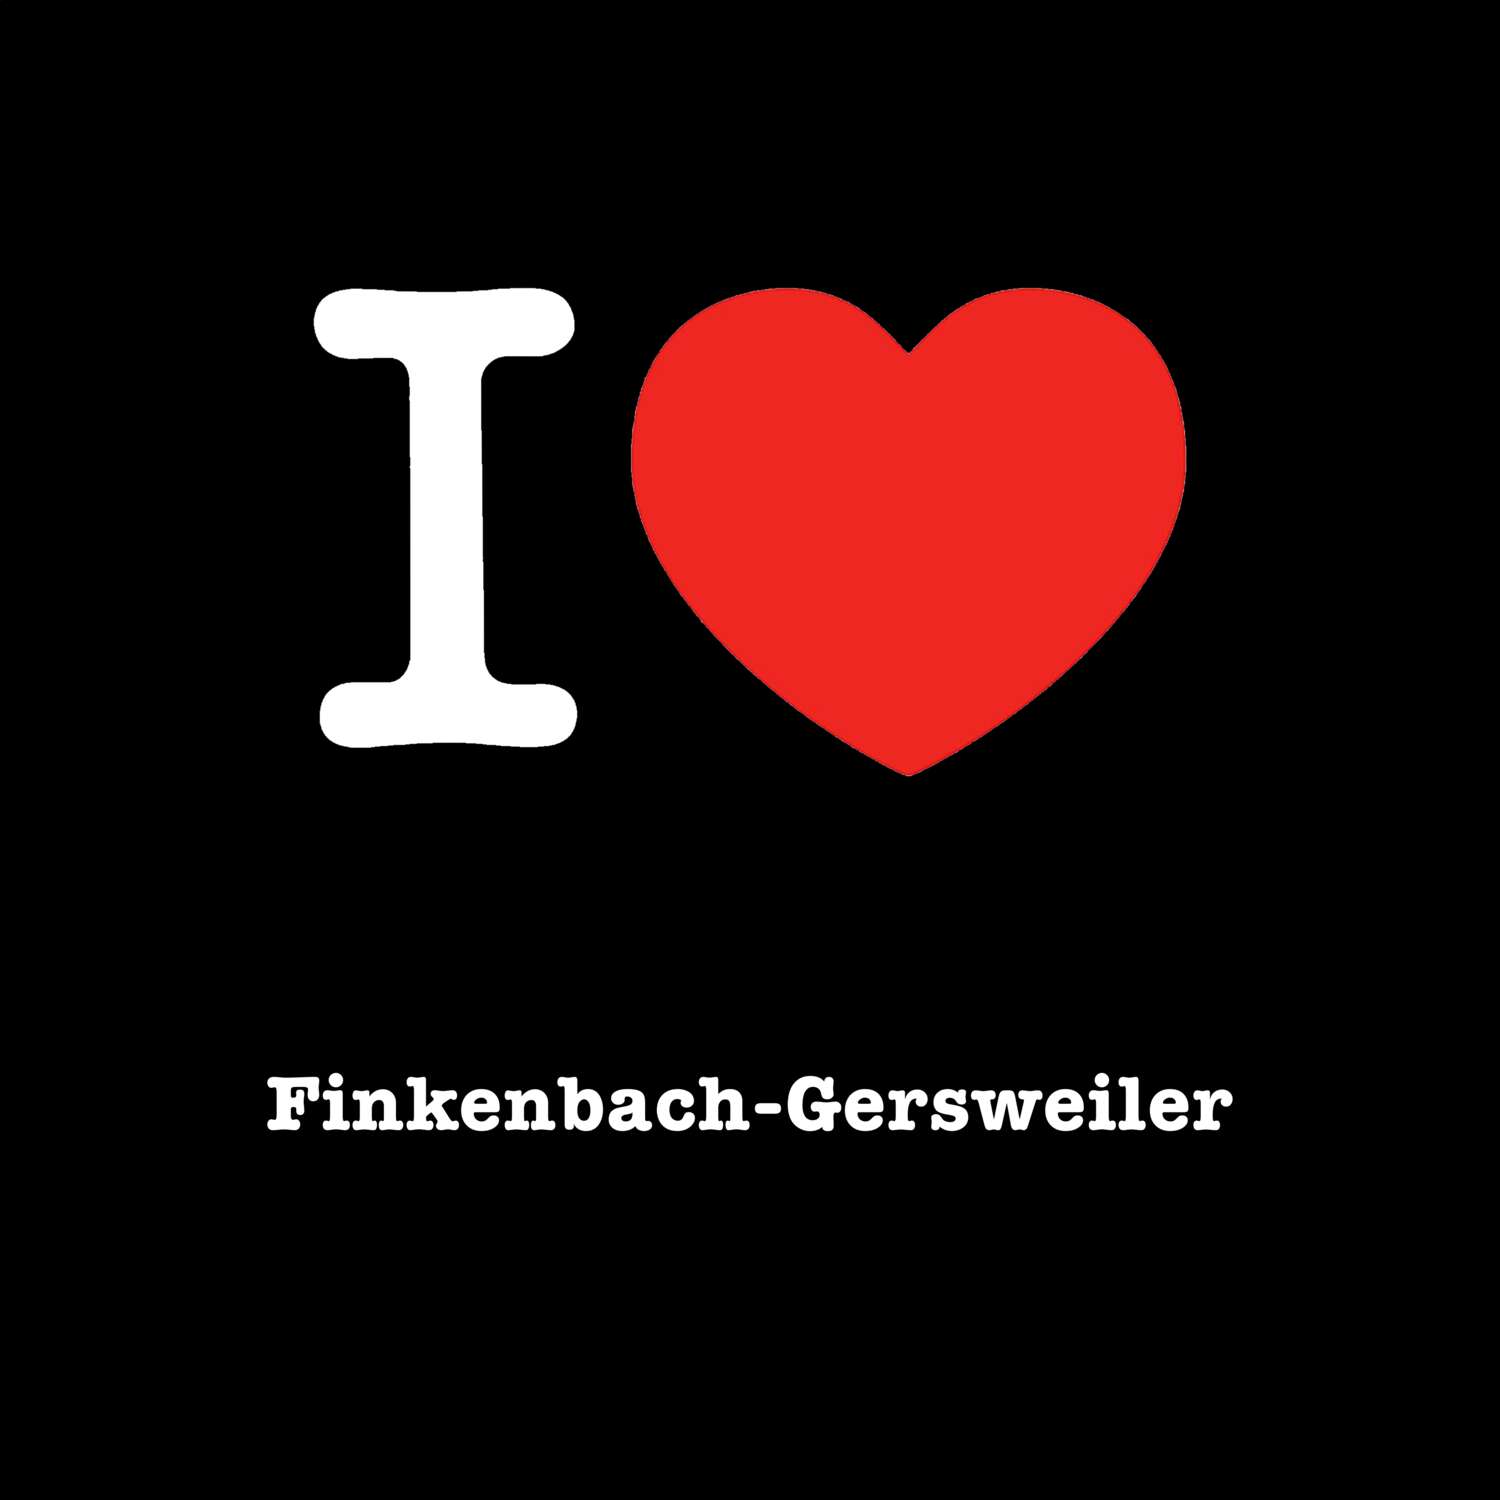 Finkenbach-Gersweiler T-Shirt »I love«